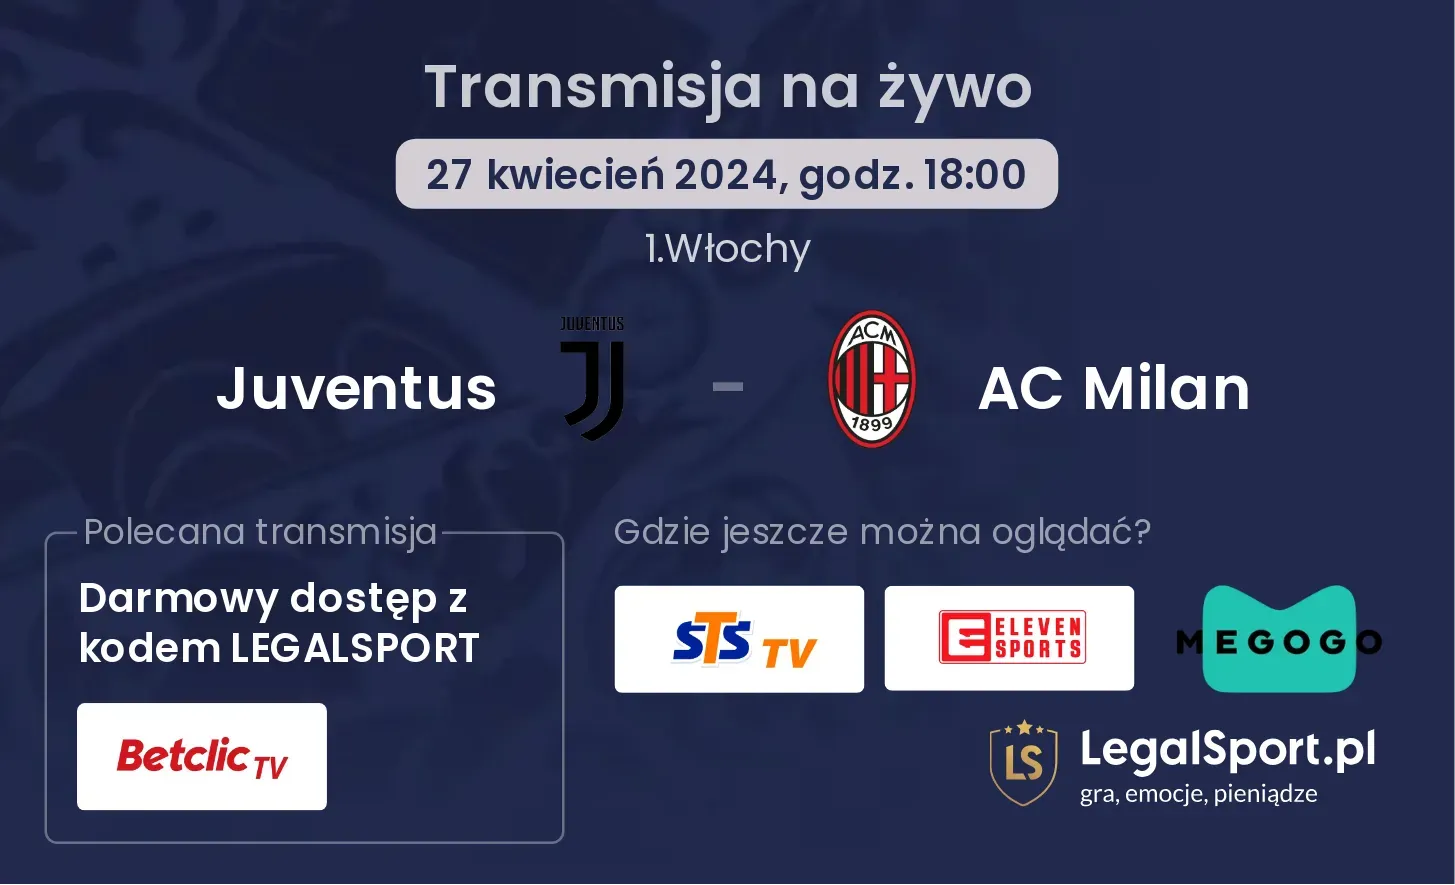 Juventus - AC Milan transmisja na żywo